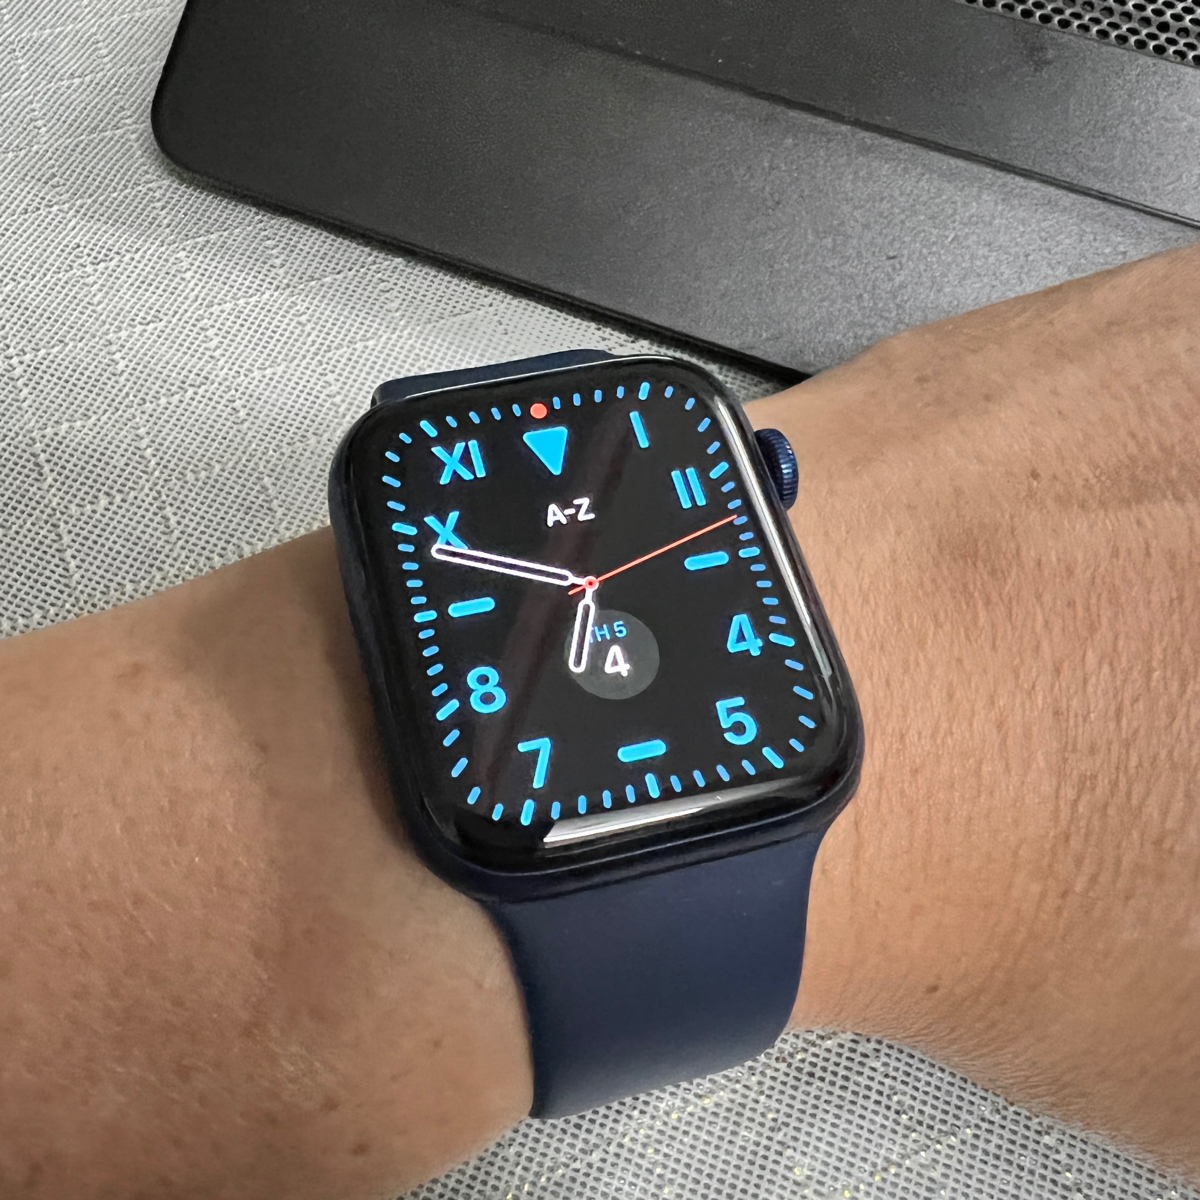 Apple Watch có thể hoạt động khi ko có iphone?